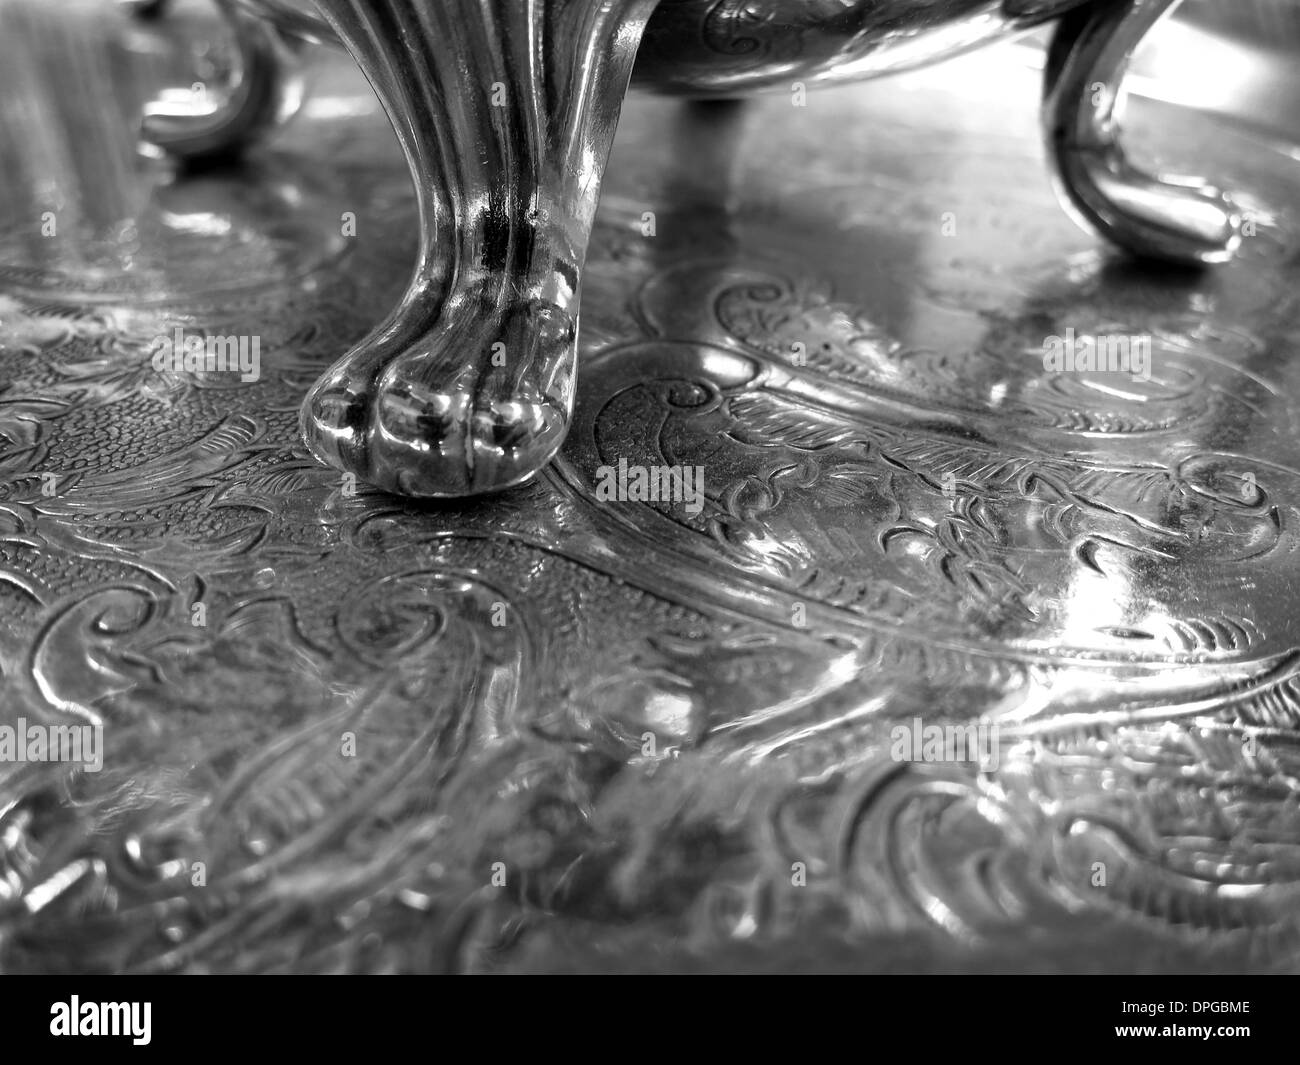 Decorativo argento elegante vassoio di servizio con incisioni Foto Stock